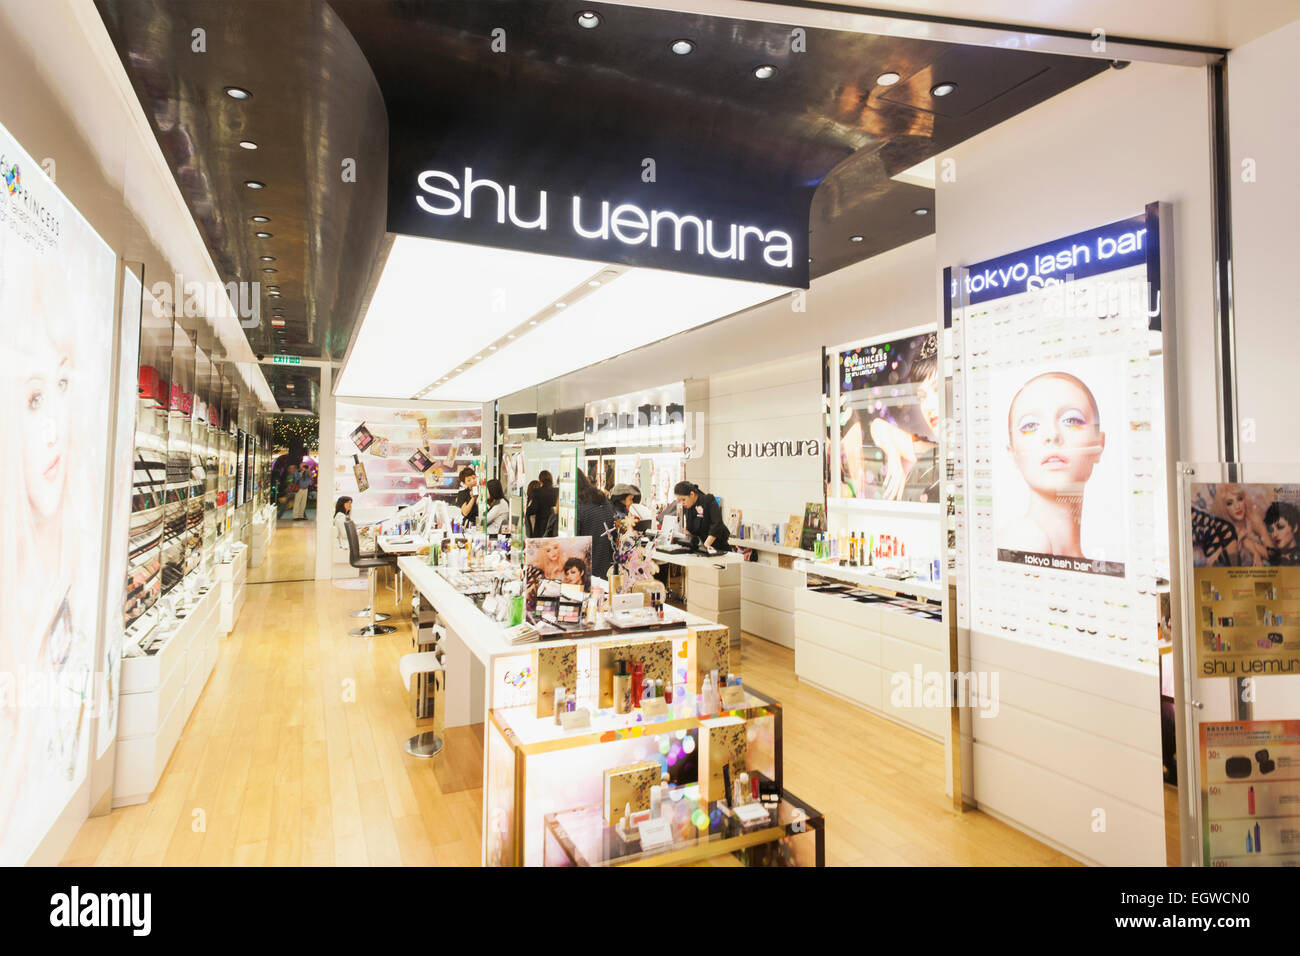 Shu uemura store immagini e fotografie stock ad alta risoluzione - Alamy